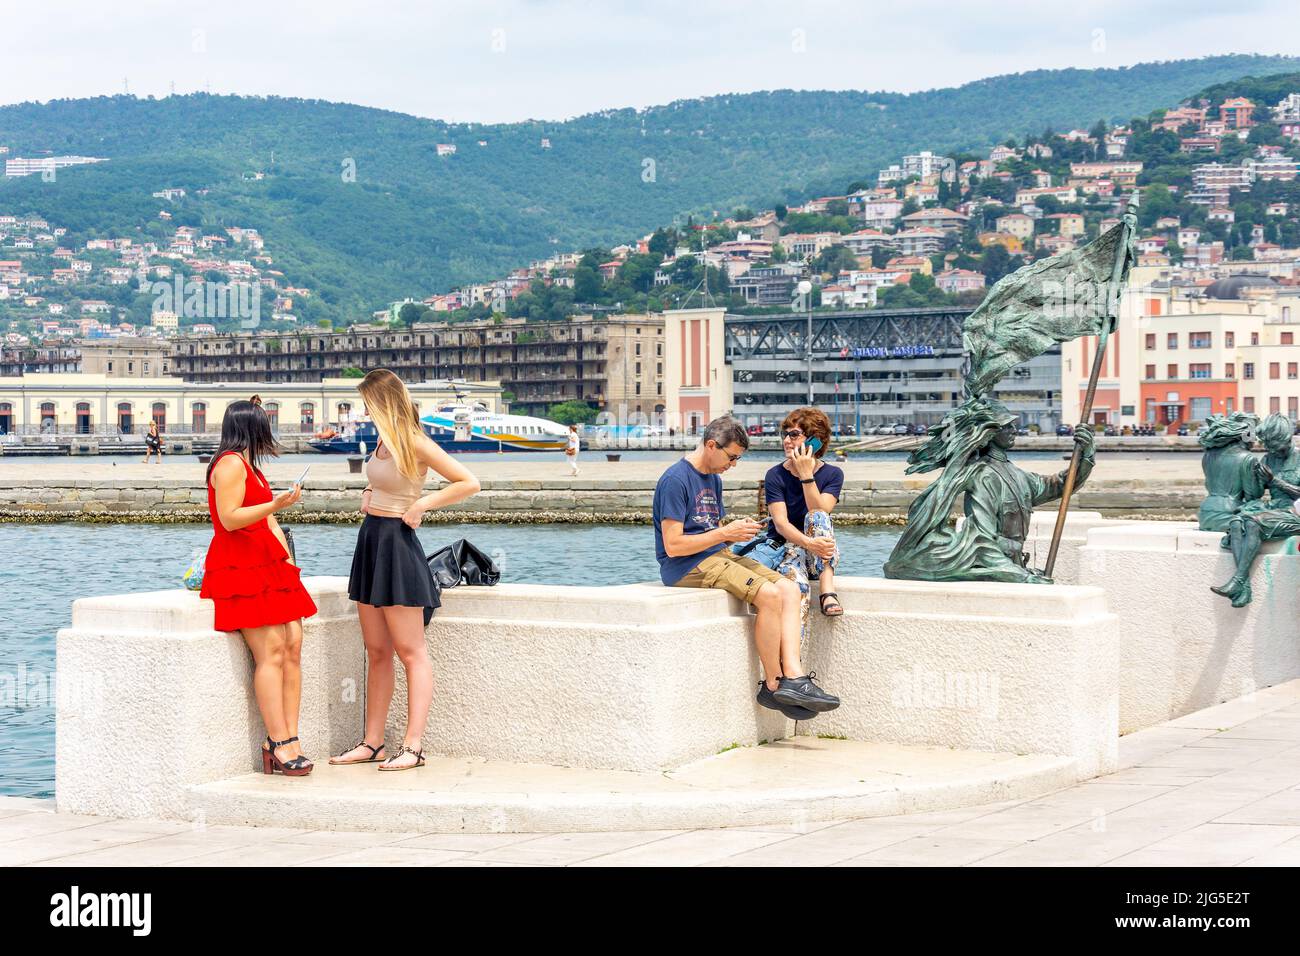 La Ragazze di Trieste sculptures on seafront promenade, Trieste, Friuli Venezia Giulia Region, Italy Stock Photo